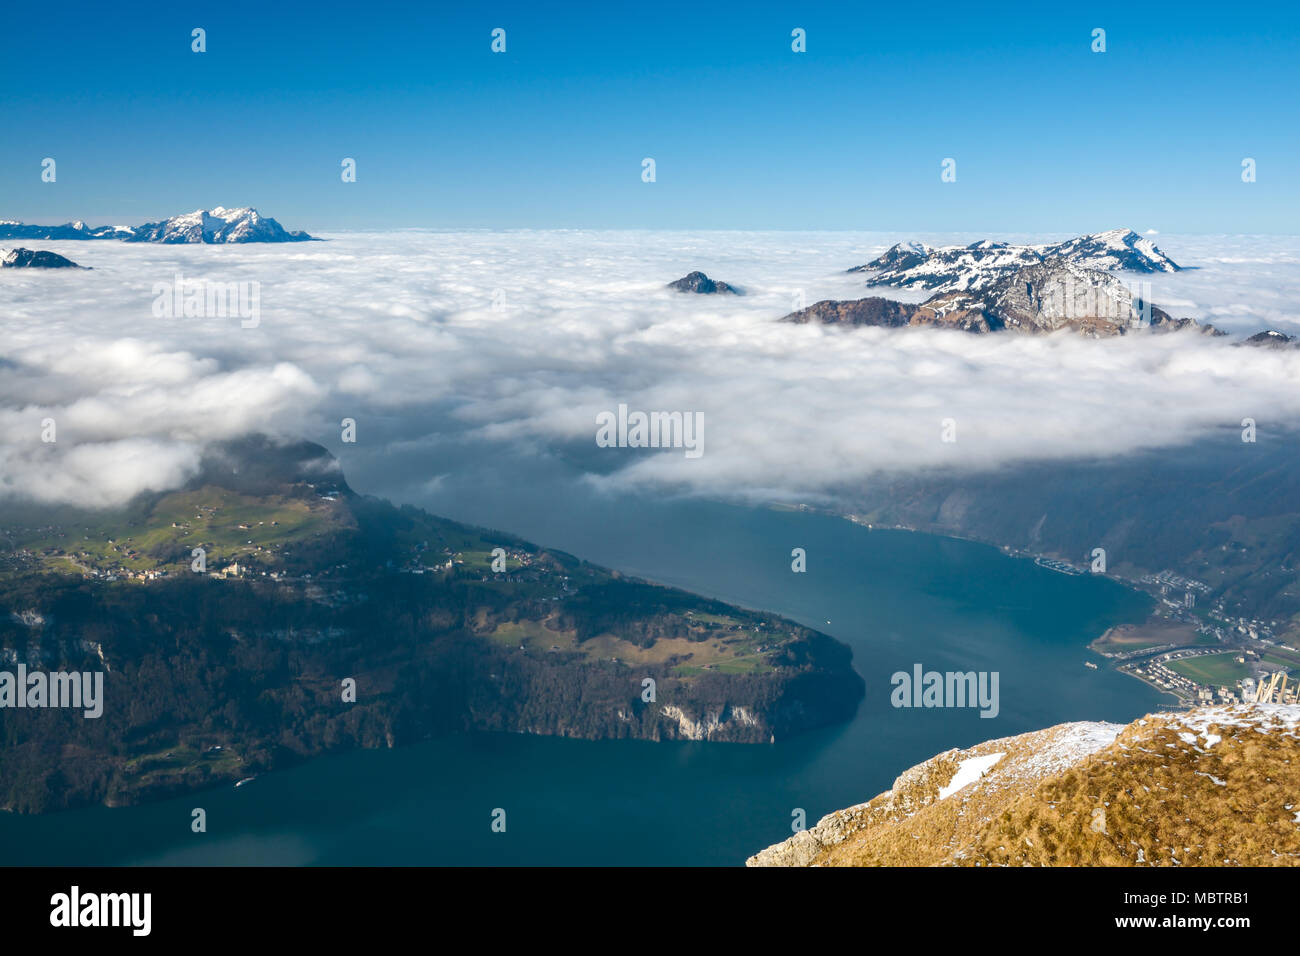 Il lago di Lucerna nelle alpi svizzere con due picchi dominanti in background - Monte Rigi e Pilatus Foto Stock